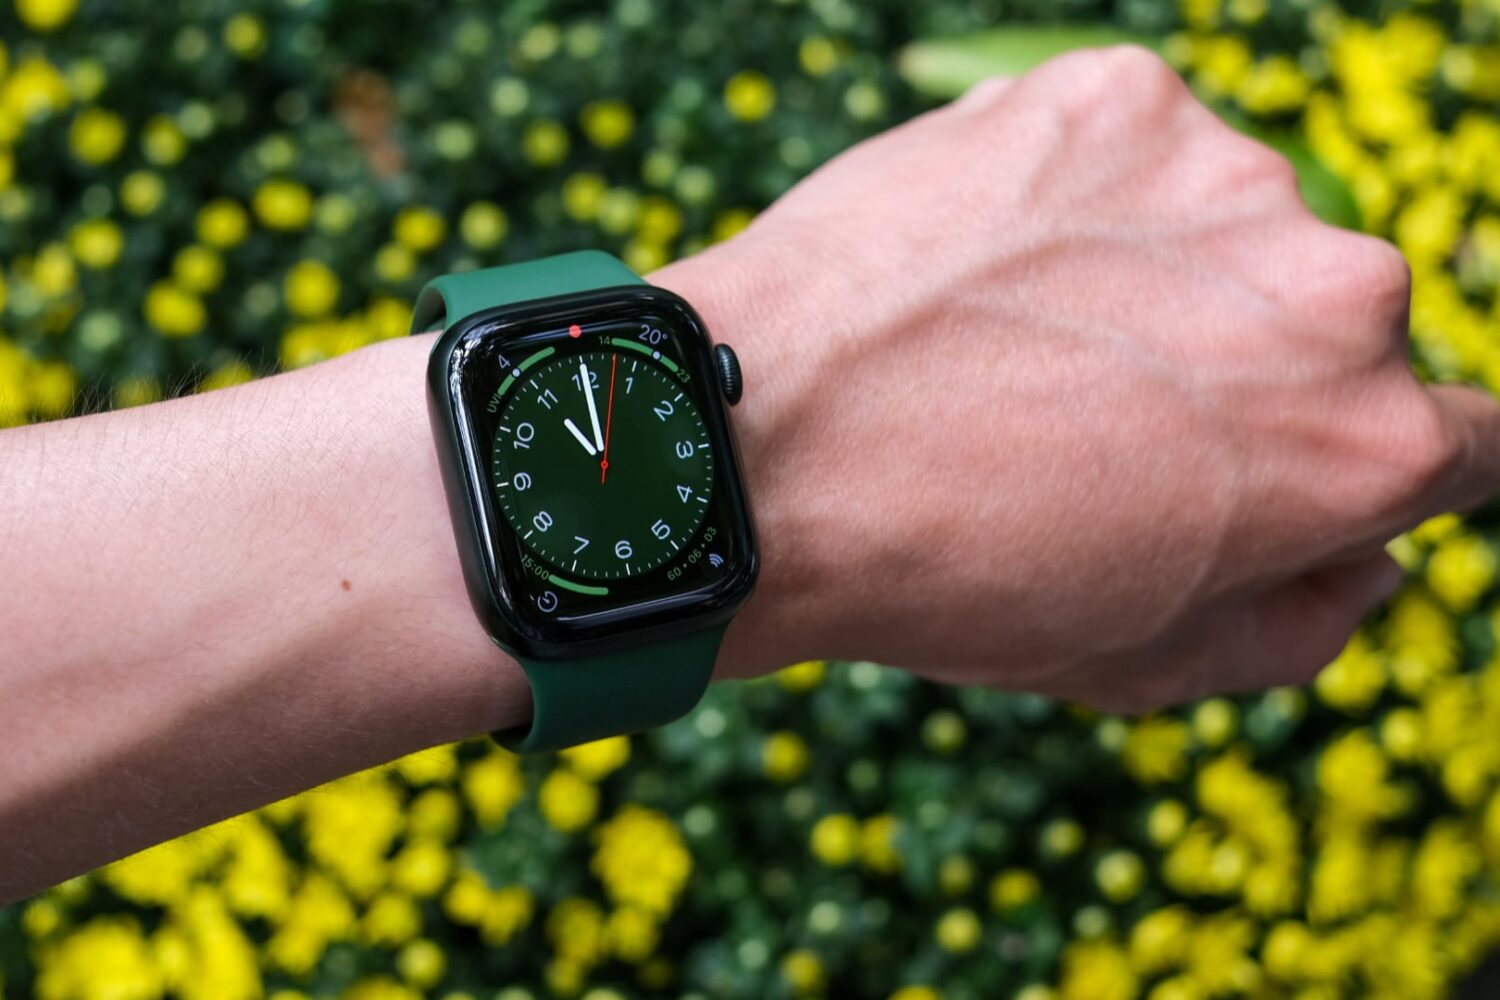 Green Apple Watch Series 7 worn on a male wrist